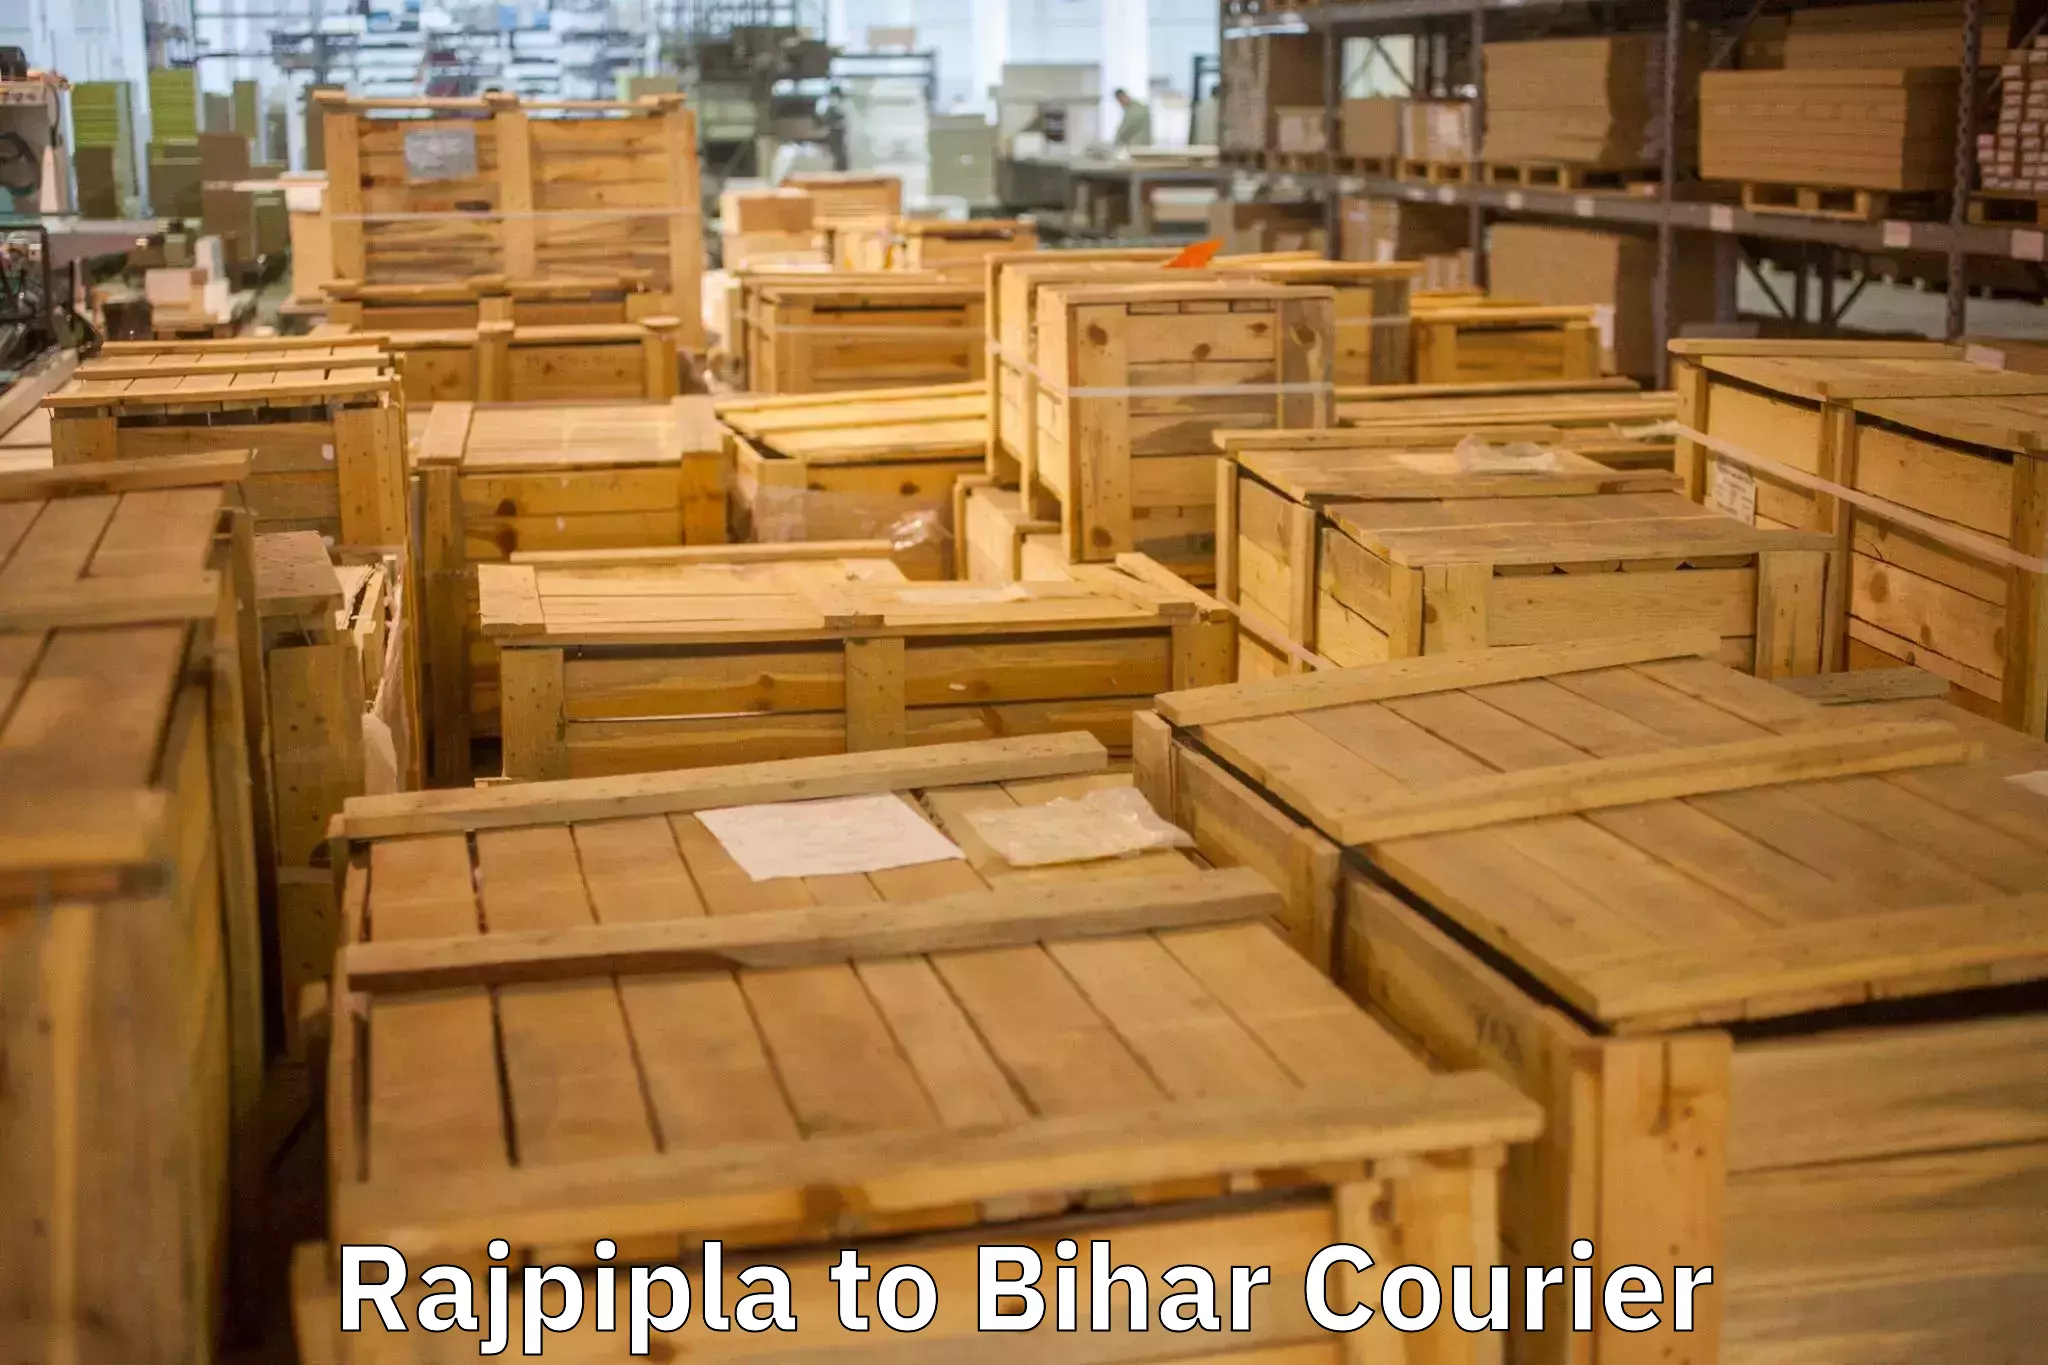 Trusted moving company Rajpipla to Bhorey